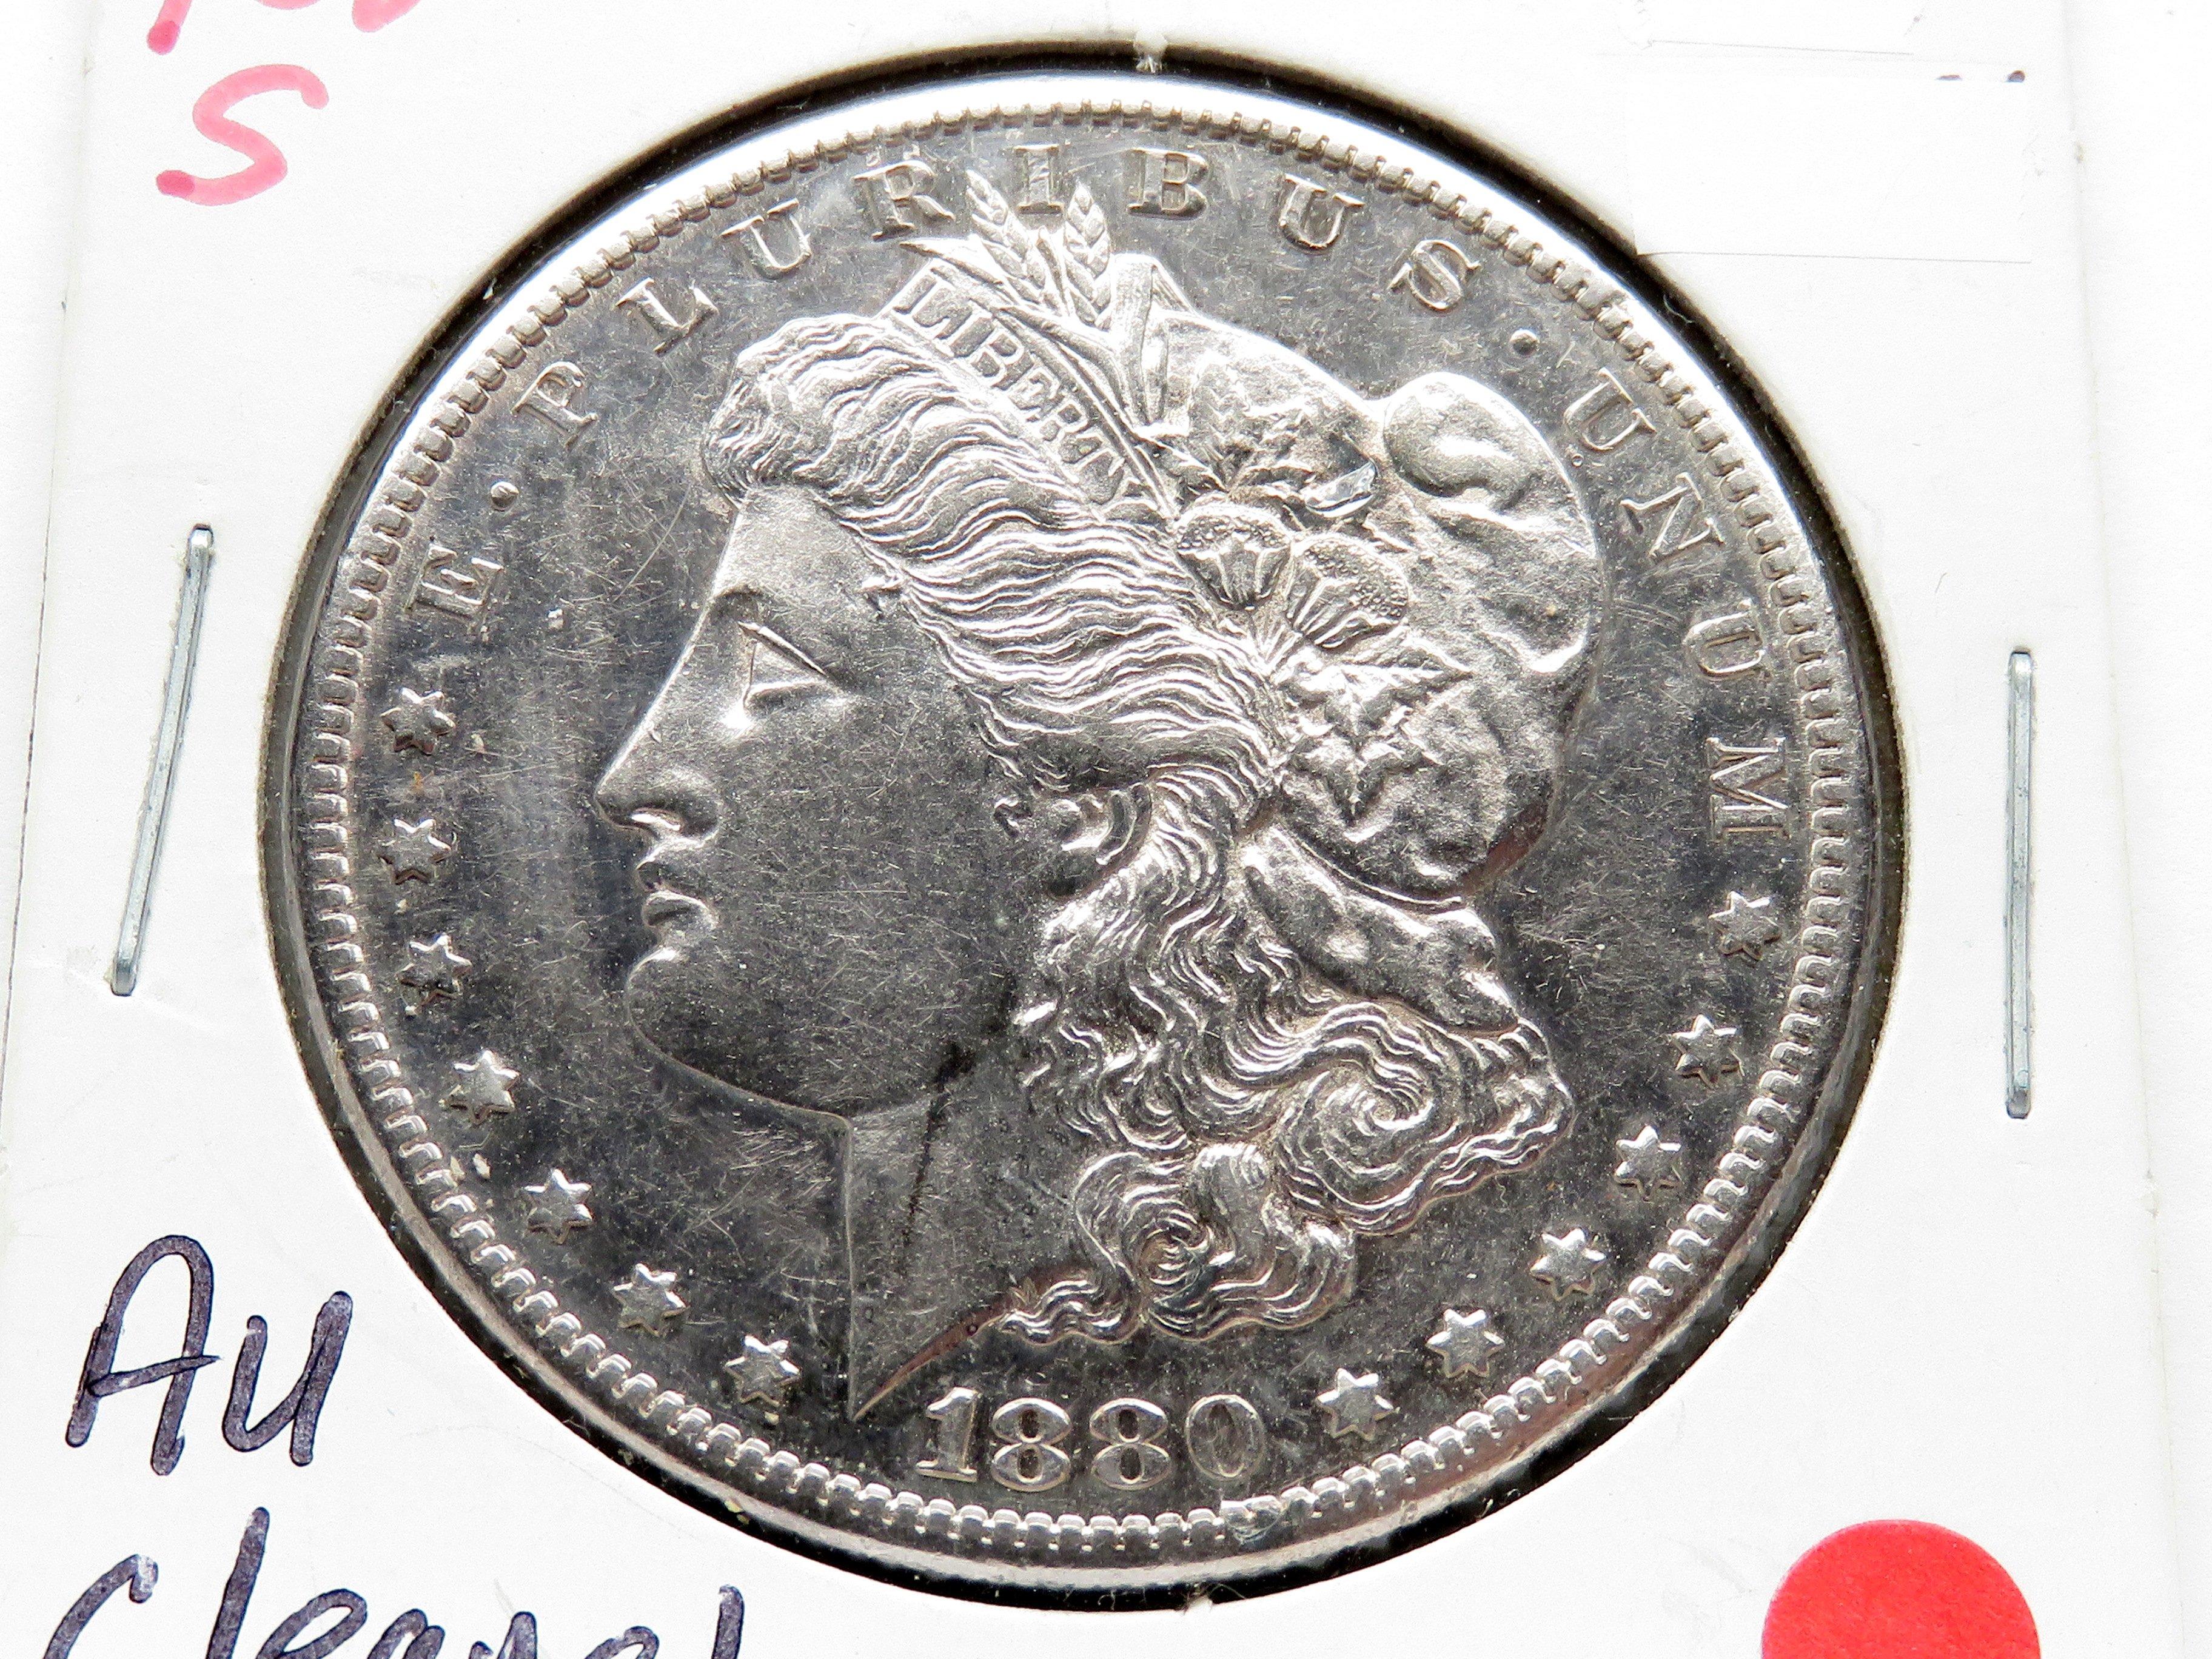 2 Morgan $ : 1880 AU harshly cleaned, 1880S AU cleaned